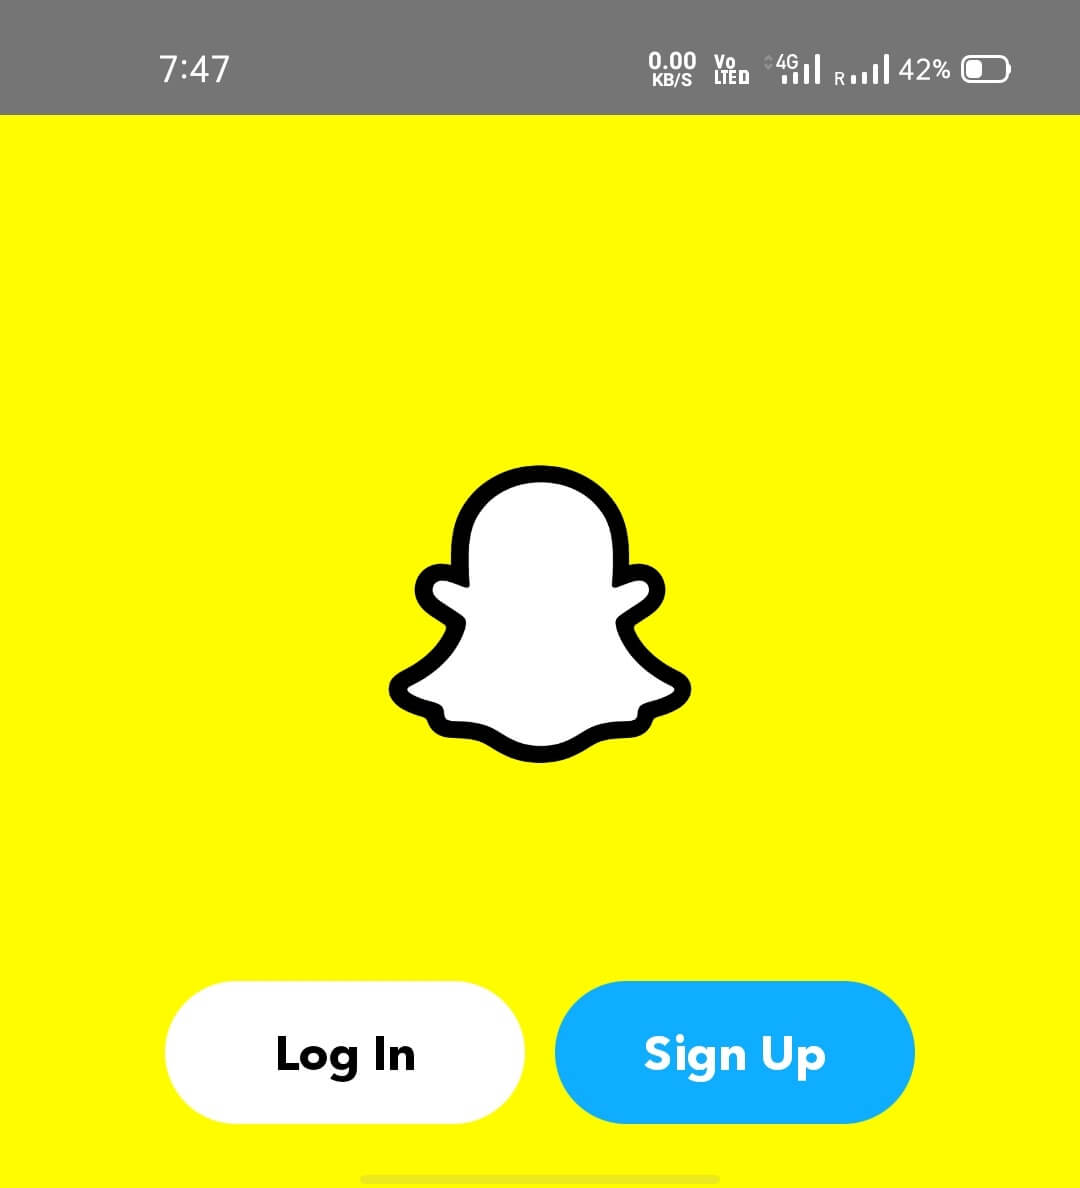 Ahora abra la aplicación de clonación de Snapchat y complete el proceso de inicio de sesión o registro